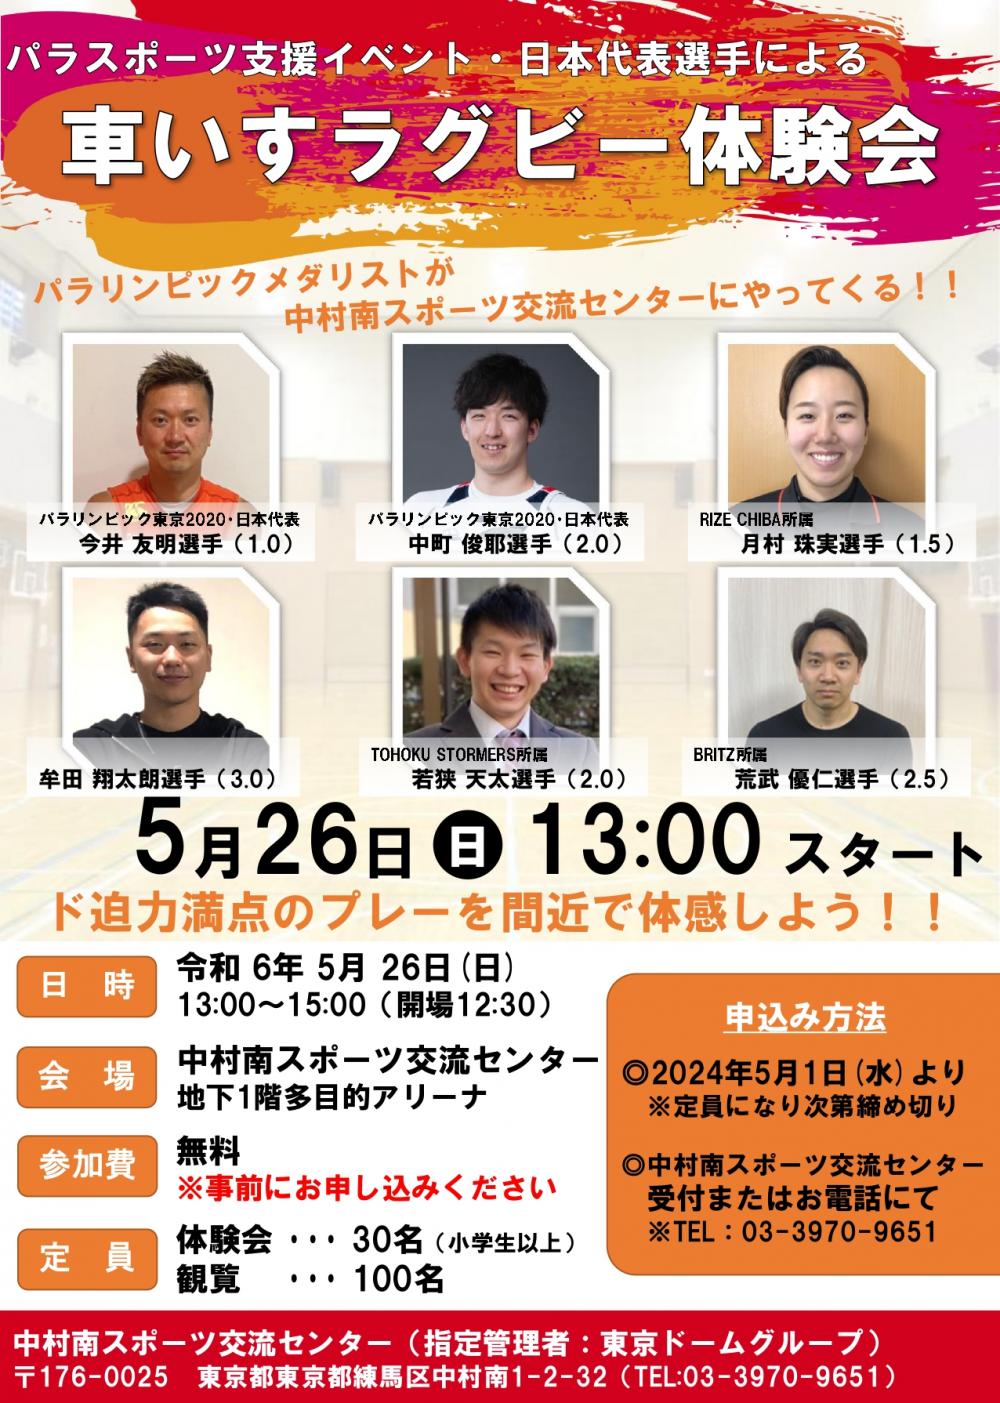 【事前申込制】パラスポーツ支援イベント・日本代表選手による車いすラグビー体験会